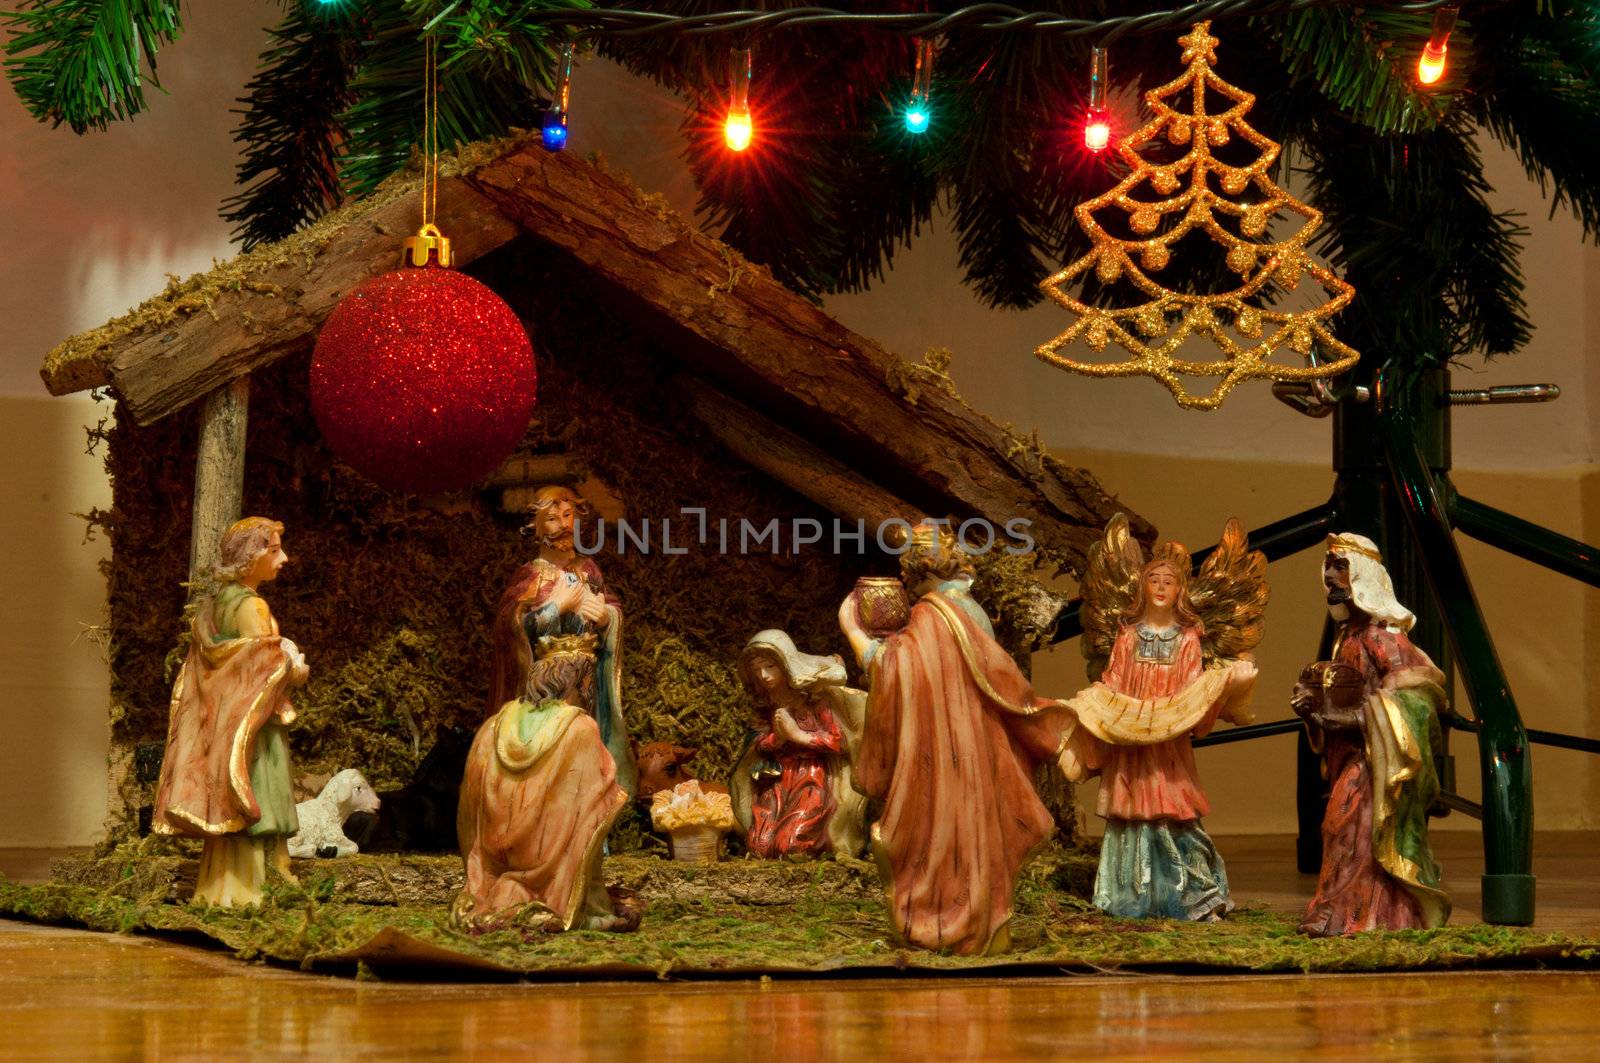 Nativity scene by luissantos84